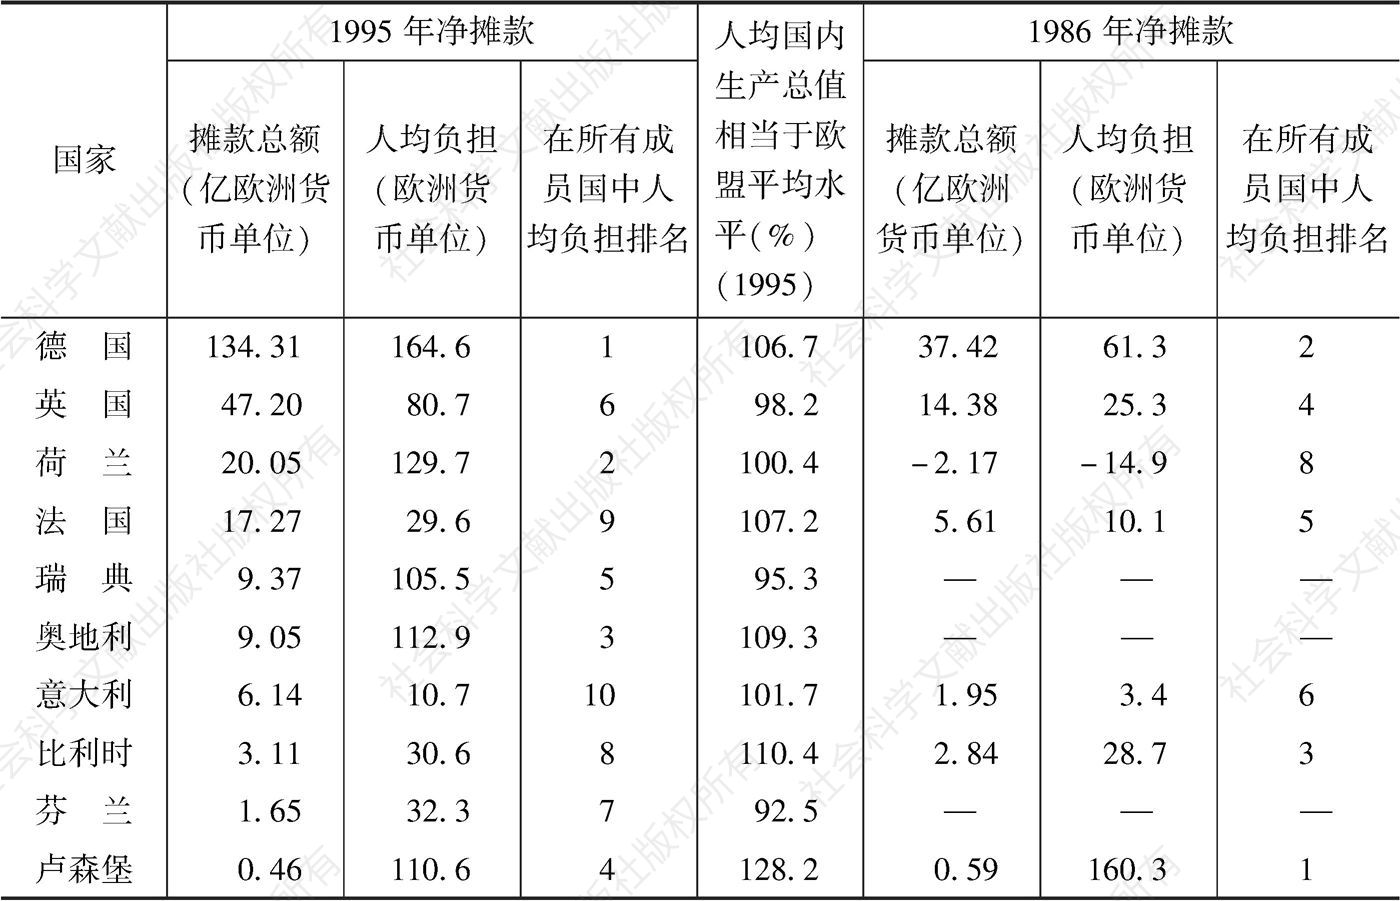 表3-2 20世纪80年代中期到90年代中期各成员国对共同体财政的贡献的变化